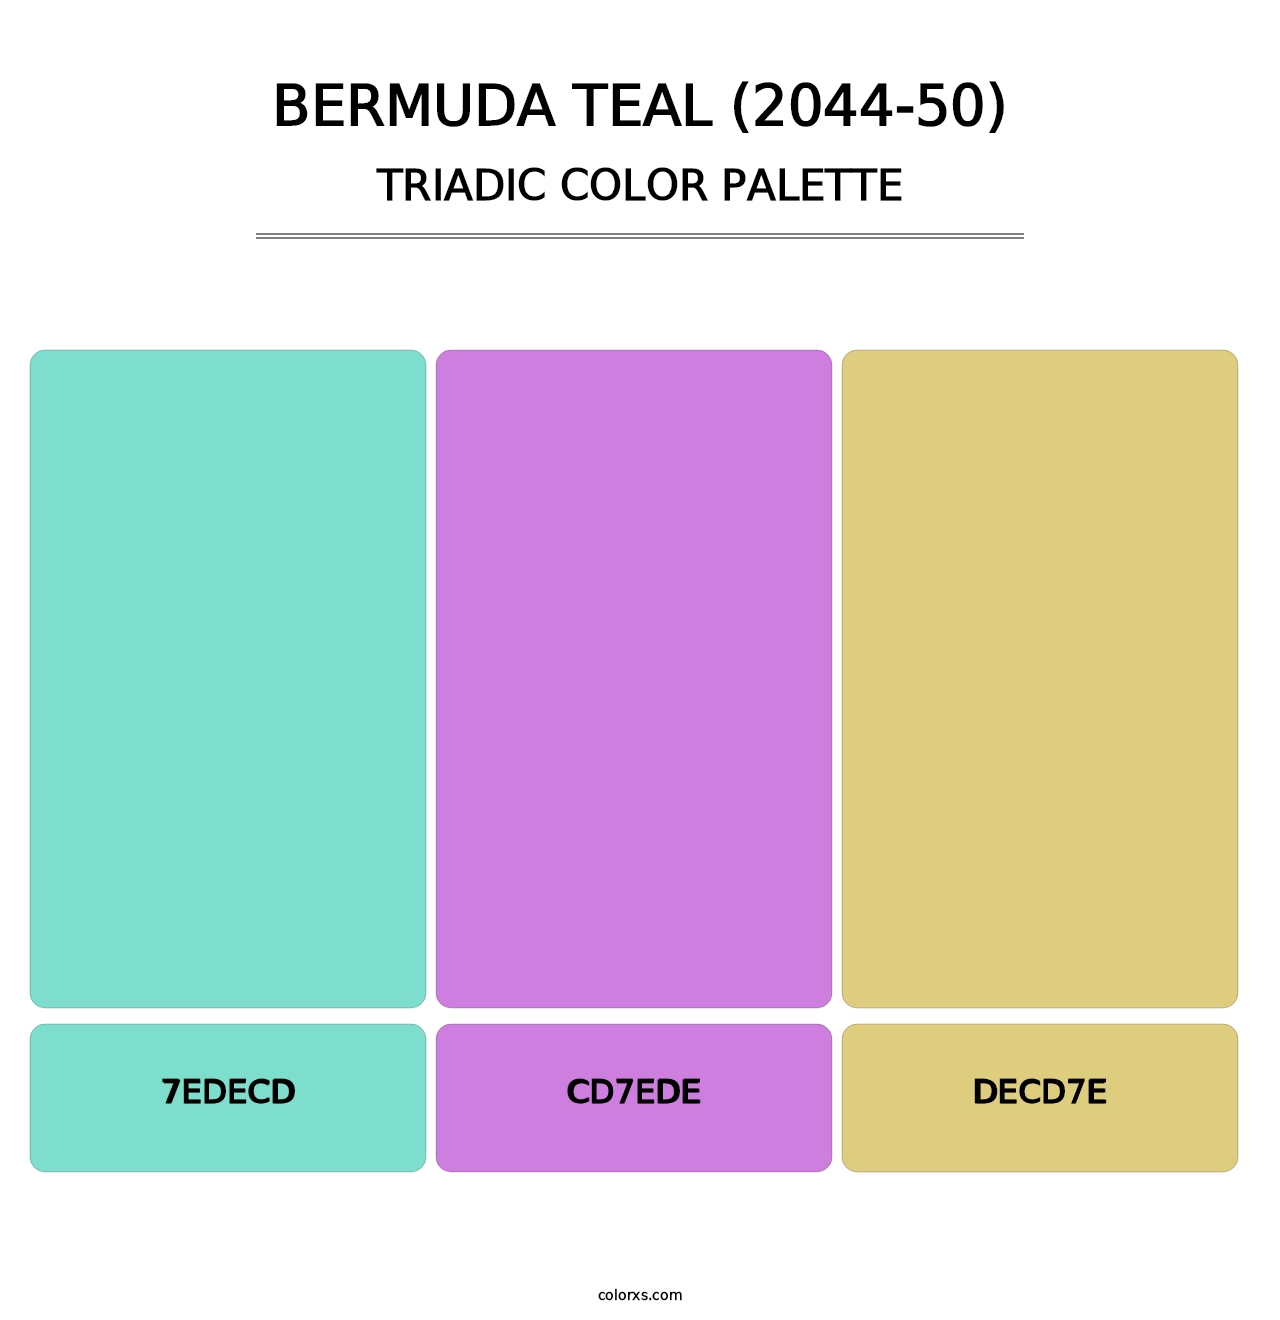 Bermuda Teal (2044-50) - Triadic Color Palette